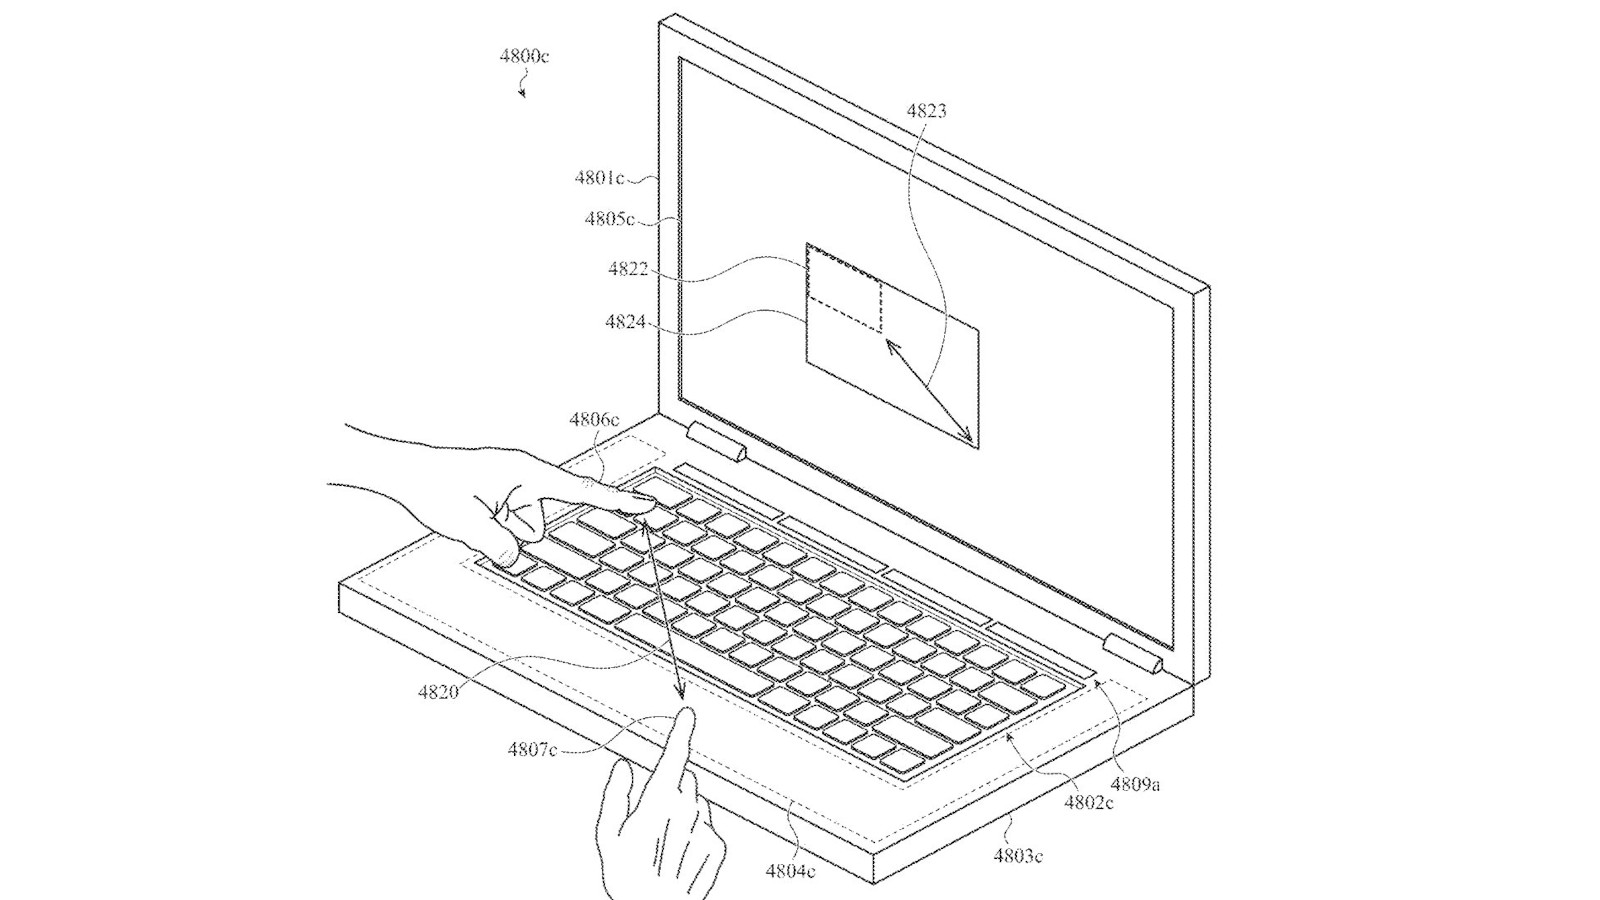  Патентная иллюстрация дизайна Apple, показывающая клавиатуру с тачпадом